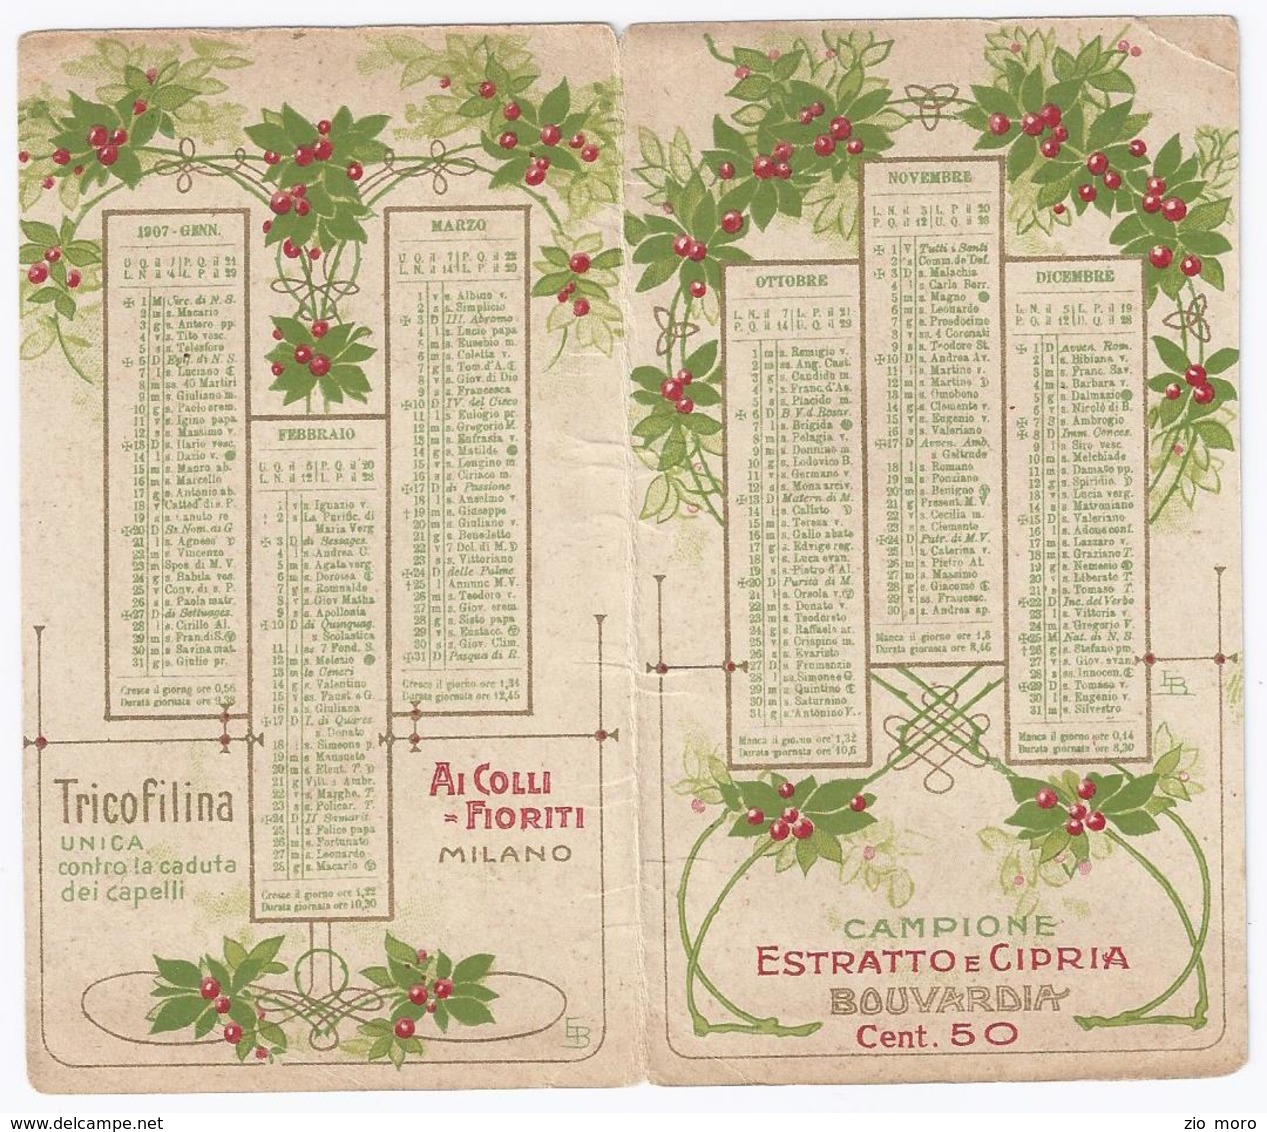 Splendido Calendario Da Tasca Liberty 1907 Ai Colli Fioriti - Milano - Estratto E Cipria BOUVARDIA - Kleinformat : 1901-20